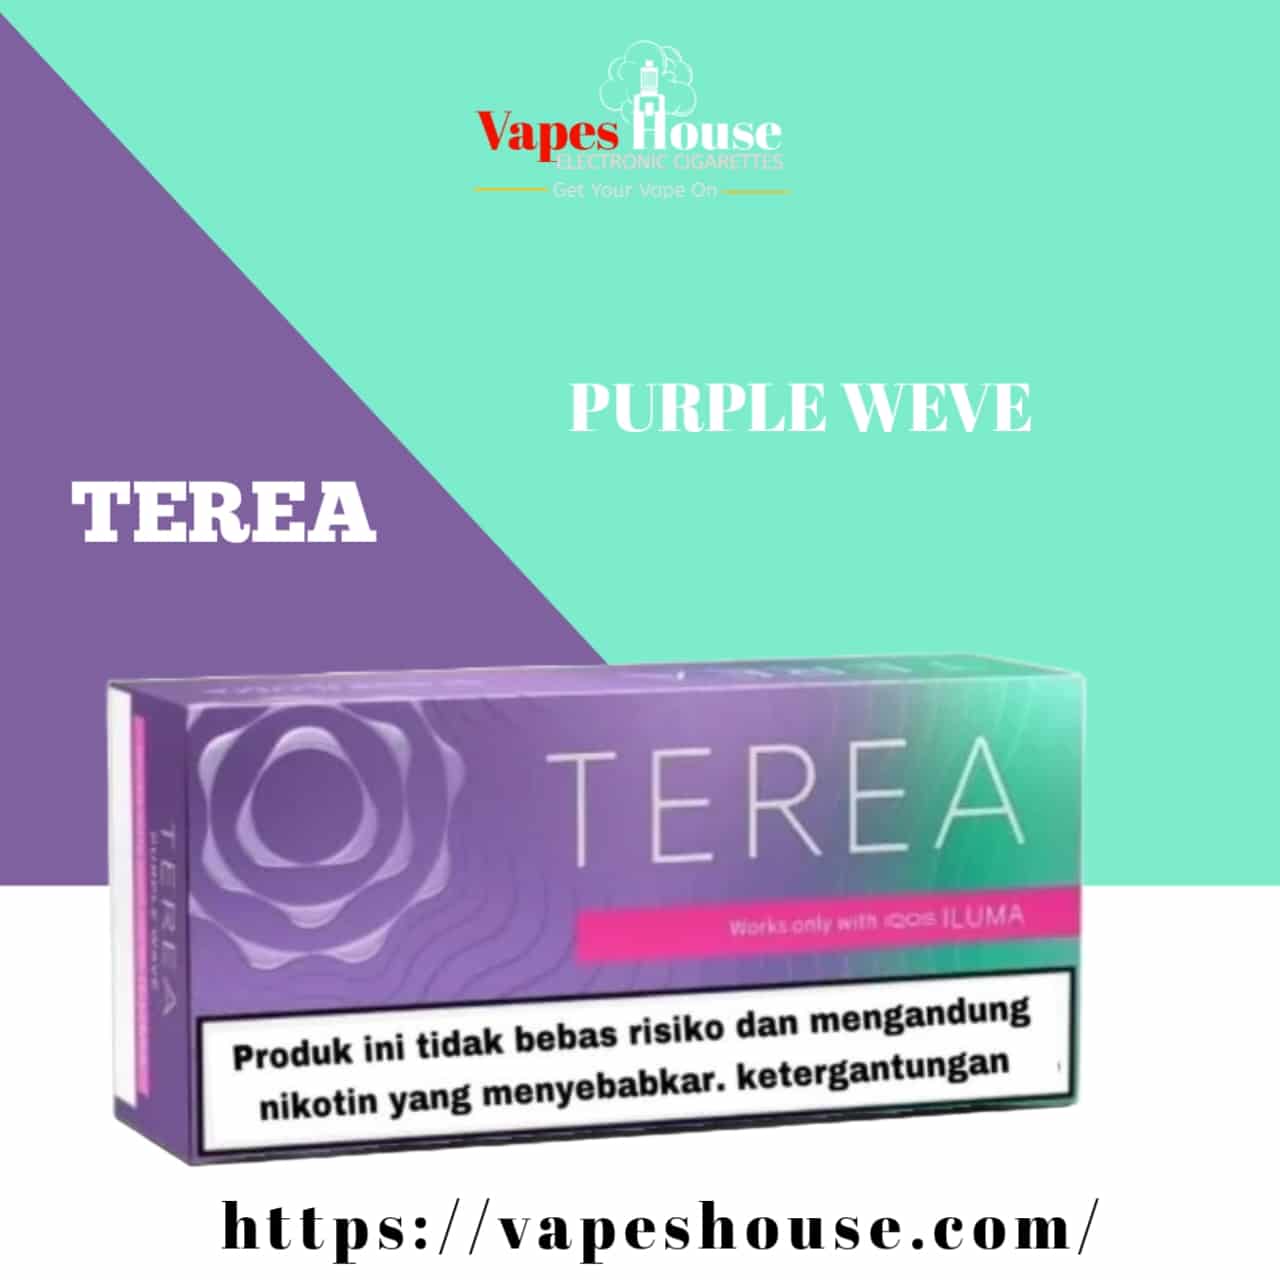 Purple Wave Terea